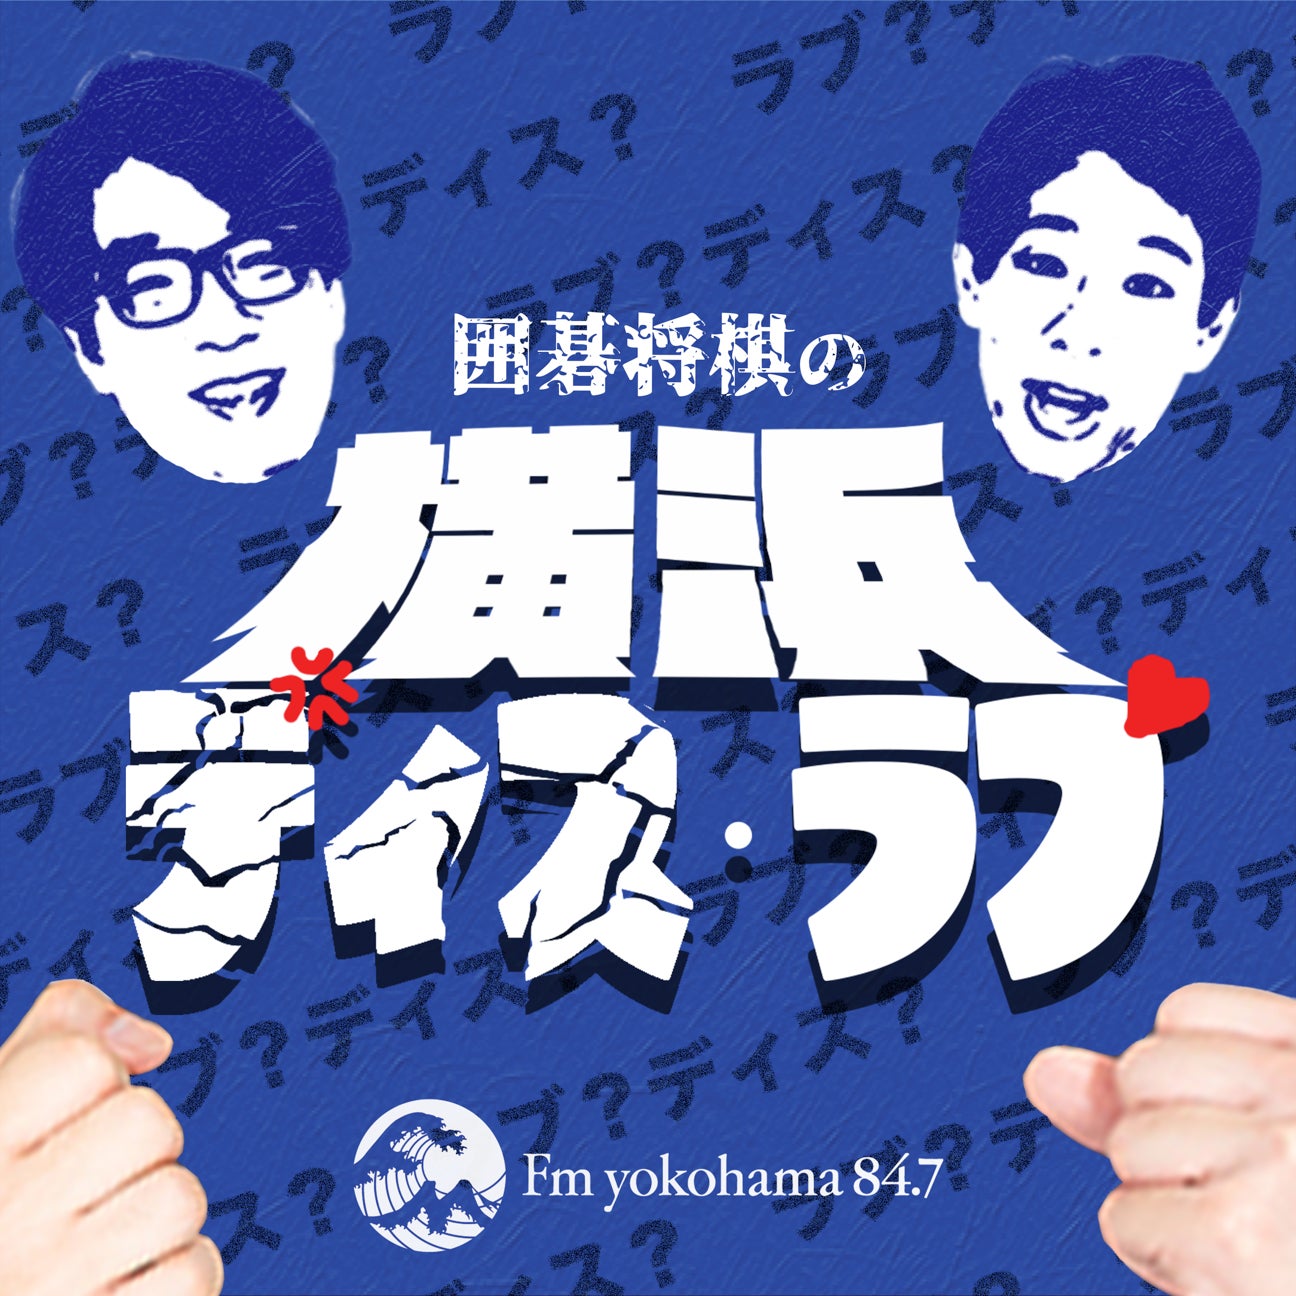 囲碁将棋が担当する新番組「神奈川ディス・ラヴ」がスタート！